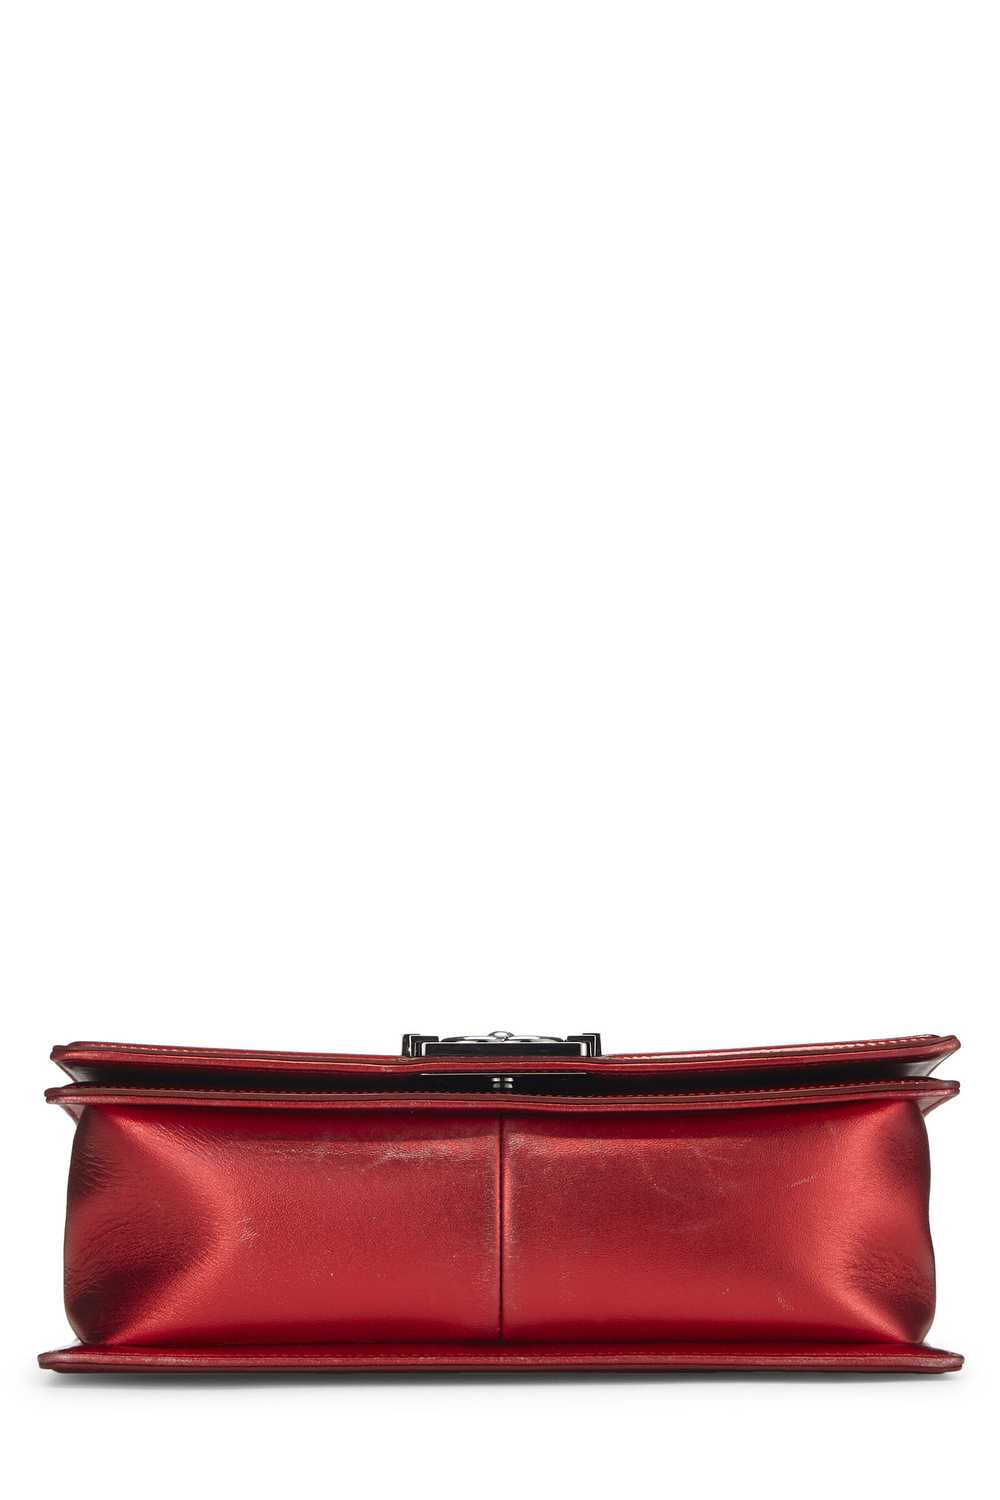 Metallic Red Patent Leather Boy Bag Medium - image 5